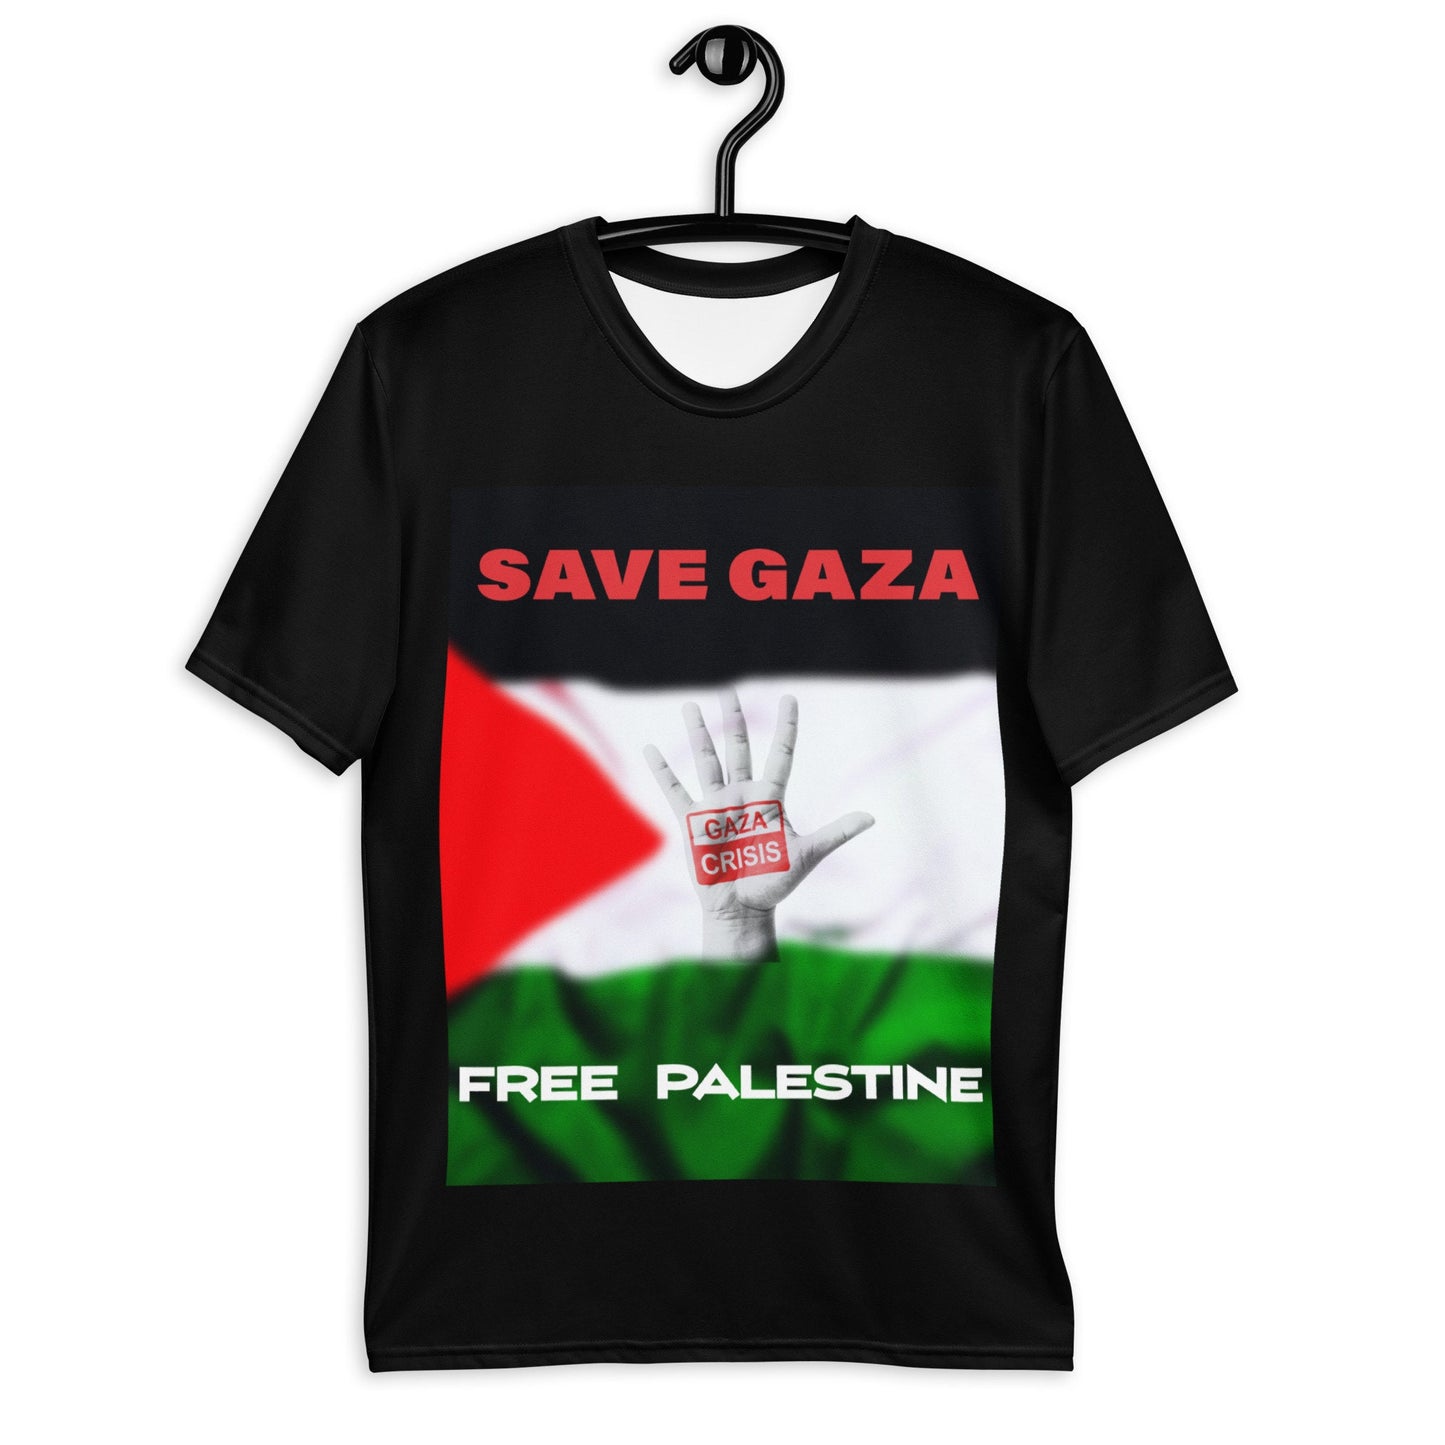 Free Palestine t-shirt, Palestine Flag Shirt, Save Gaza Shirt